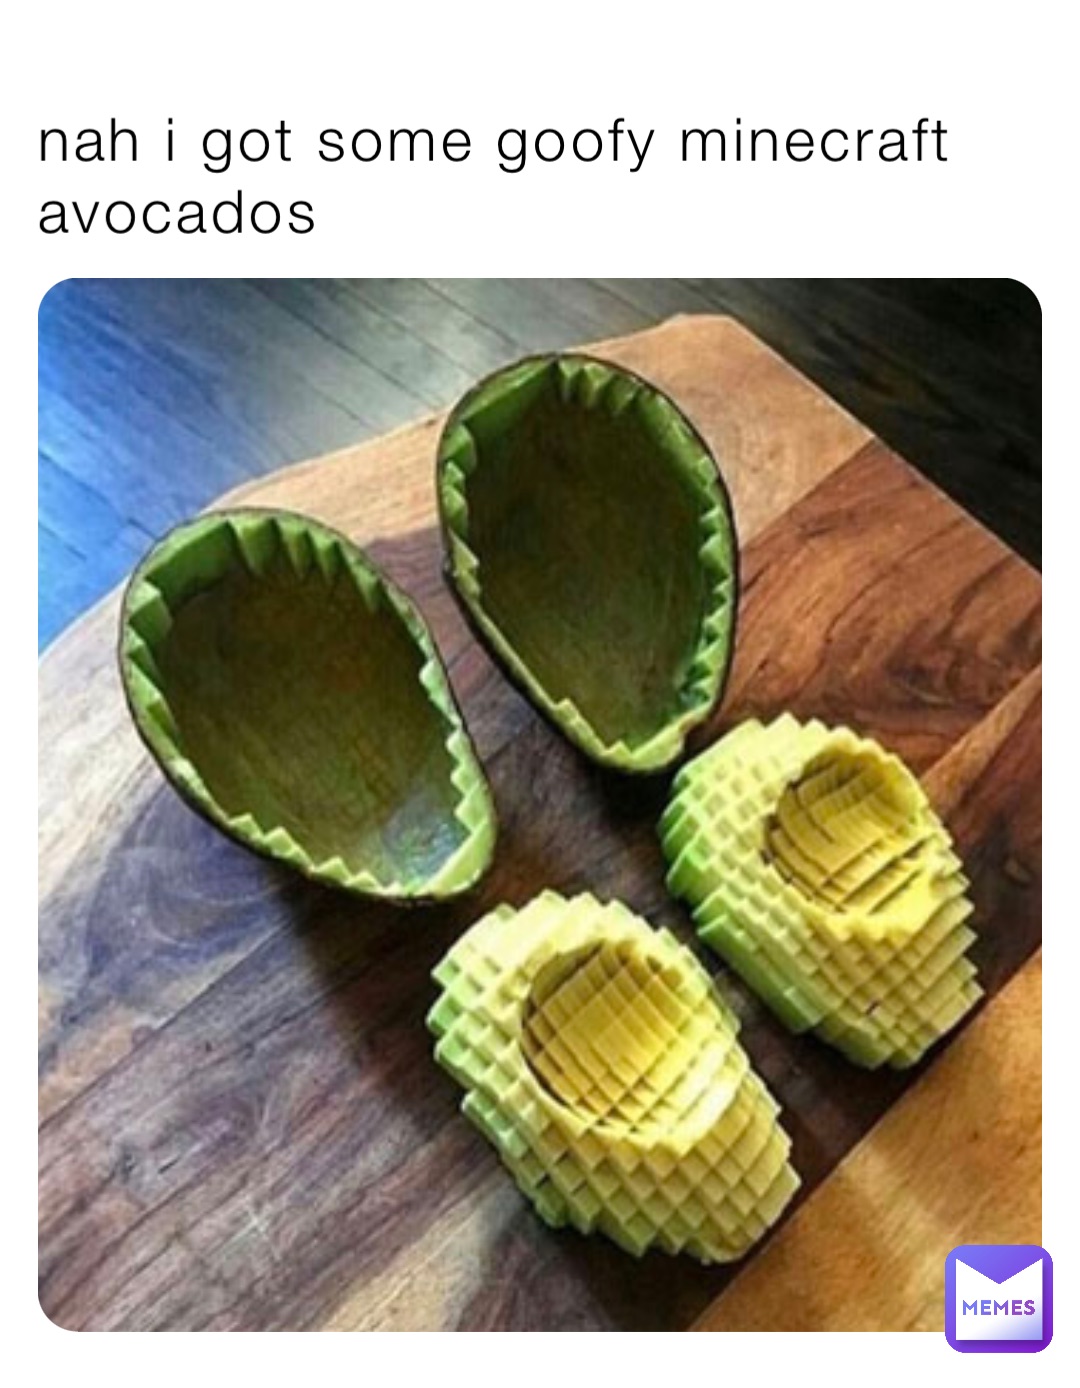 nah i got some goofy minecraft avocados